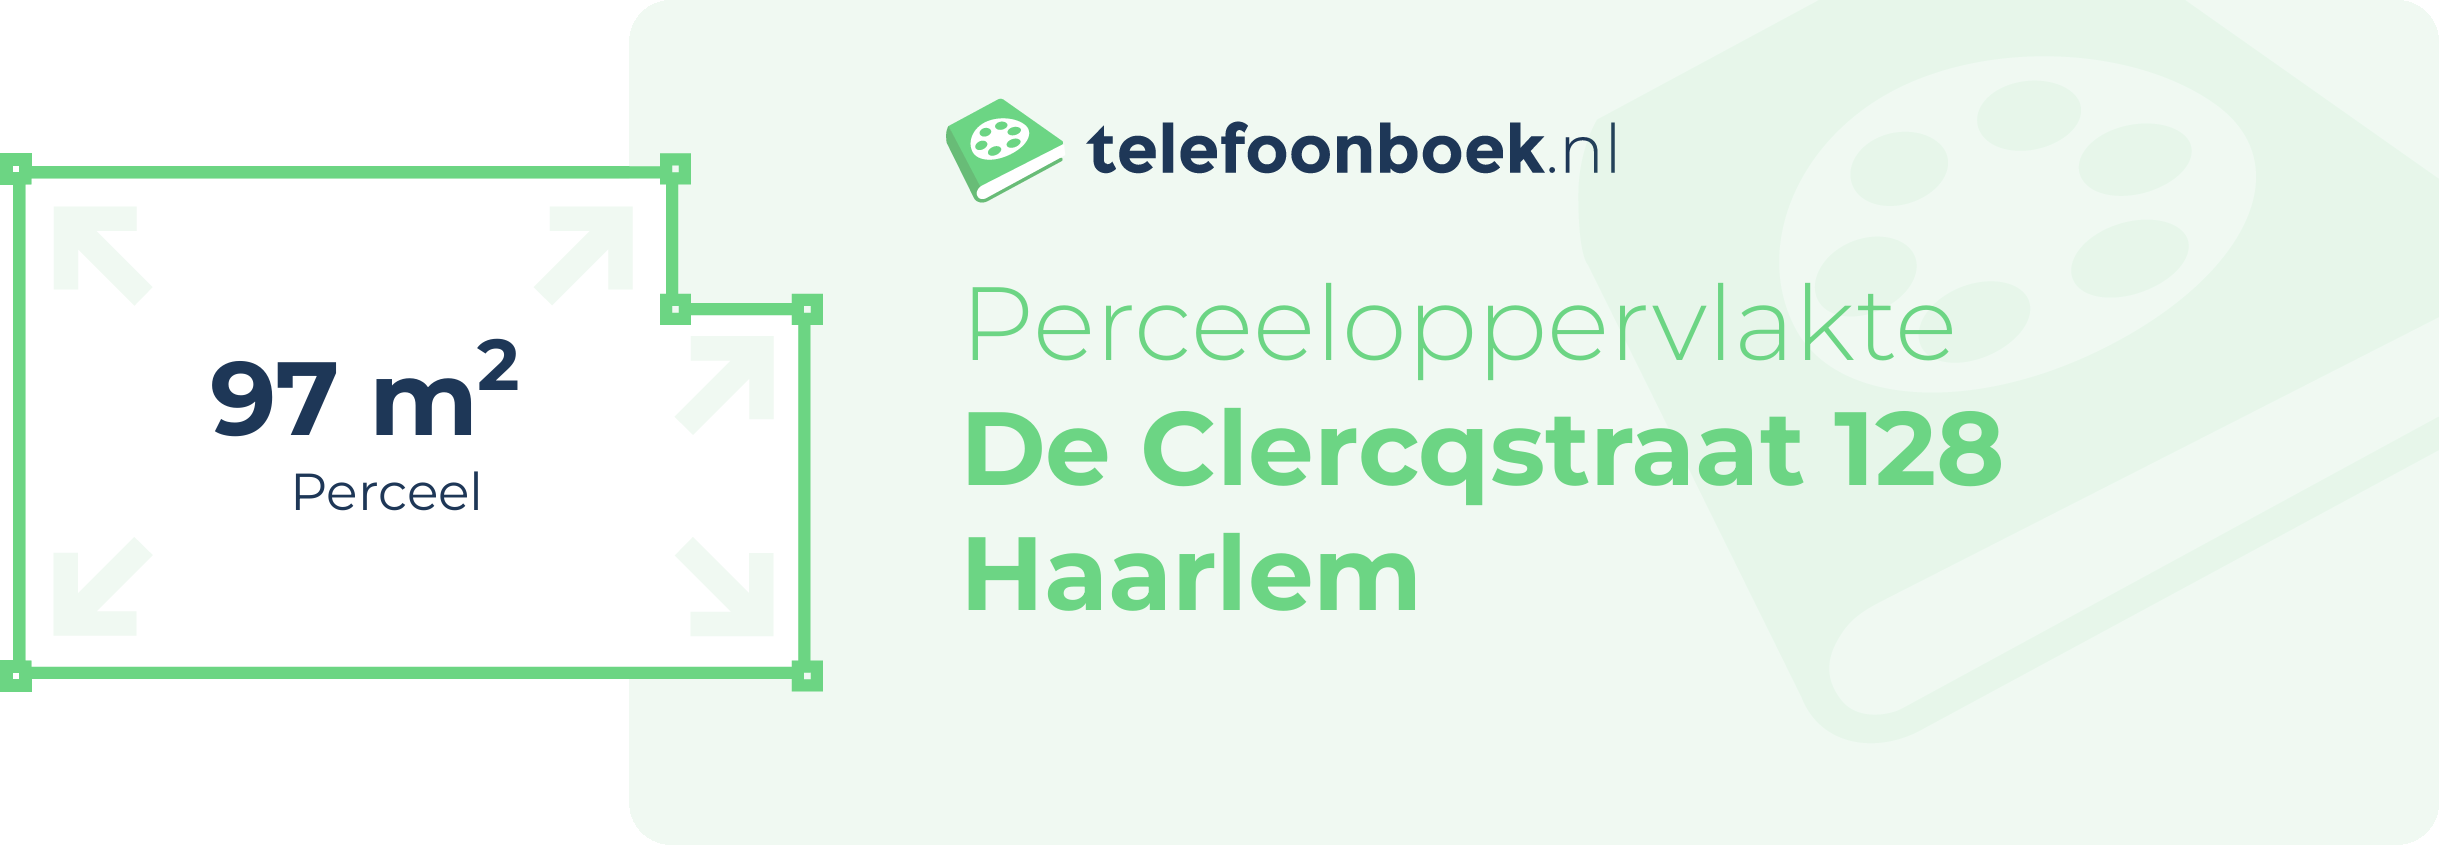 Perceeloppervlakte De Clercqstraat 128 Haarlem